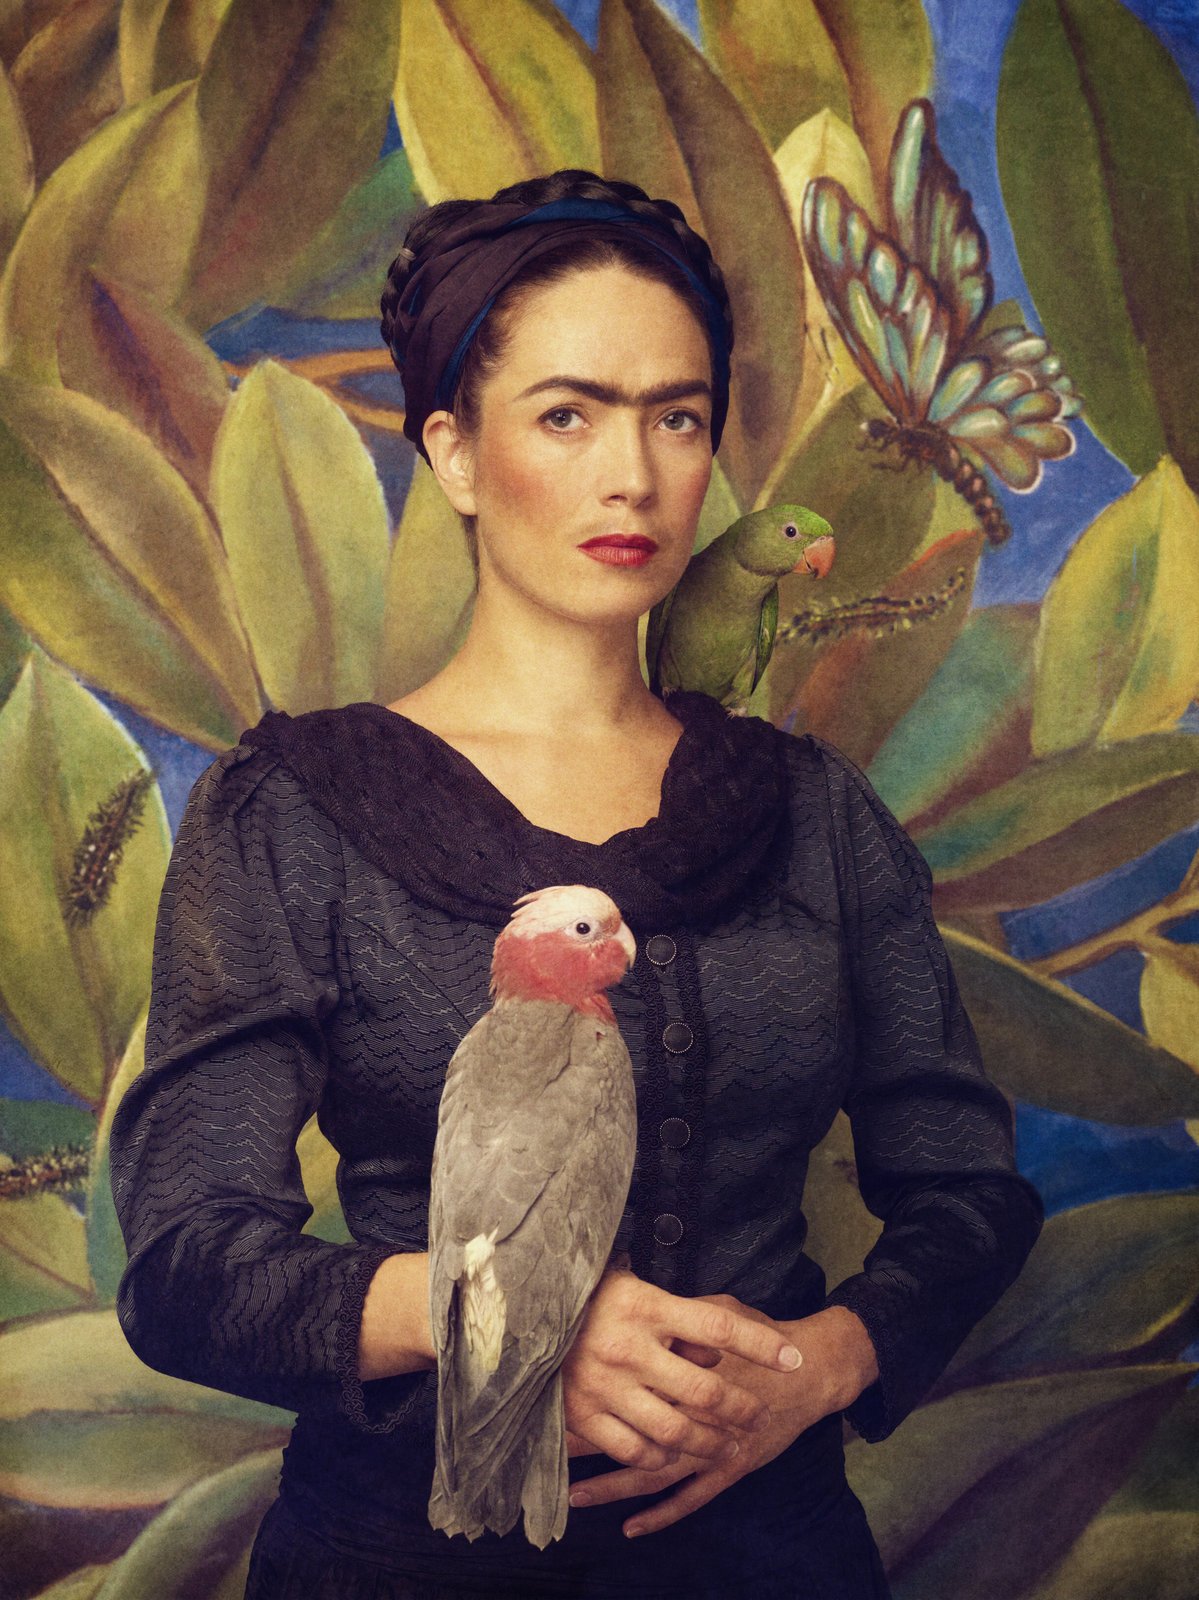 Tereza Kostková Jako Frida Kahlo vypadá opravdu věrohodně.